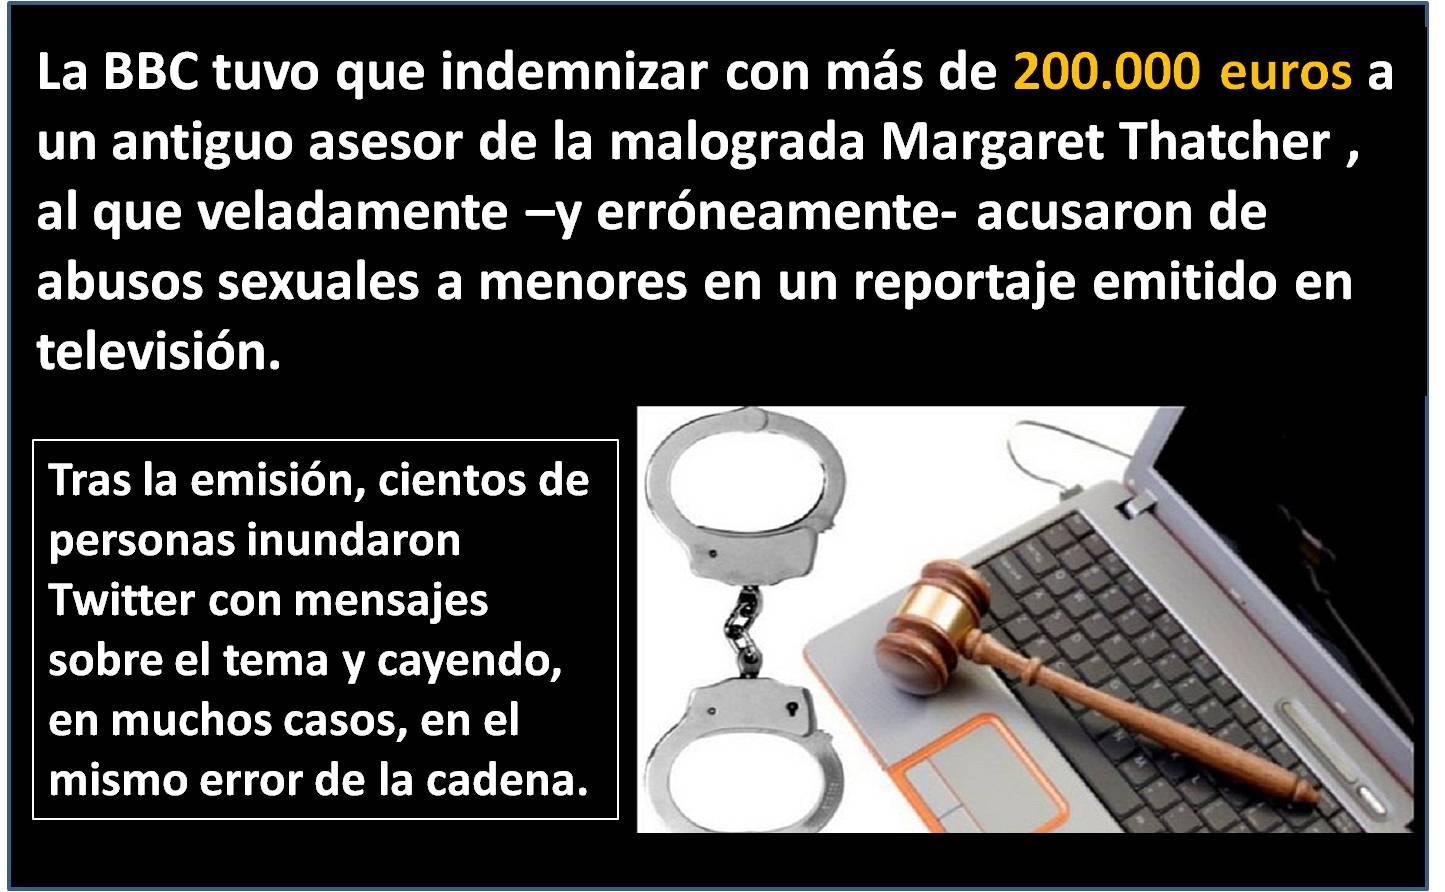 Reputacion on line y defensa legal. Esmeralda Diaz-Aroca